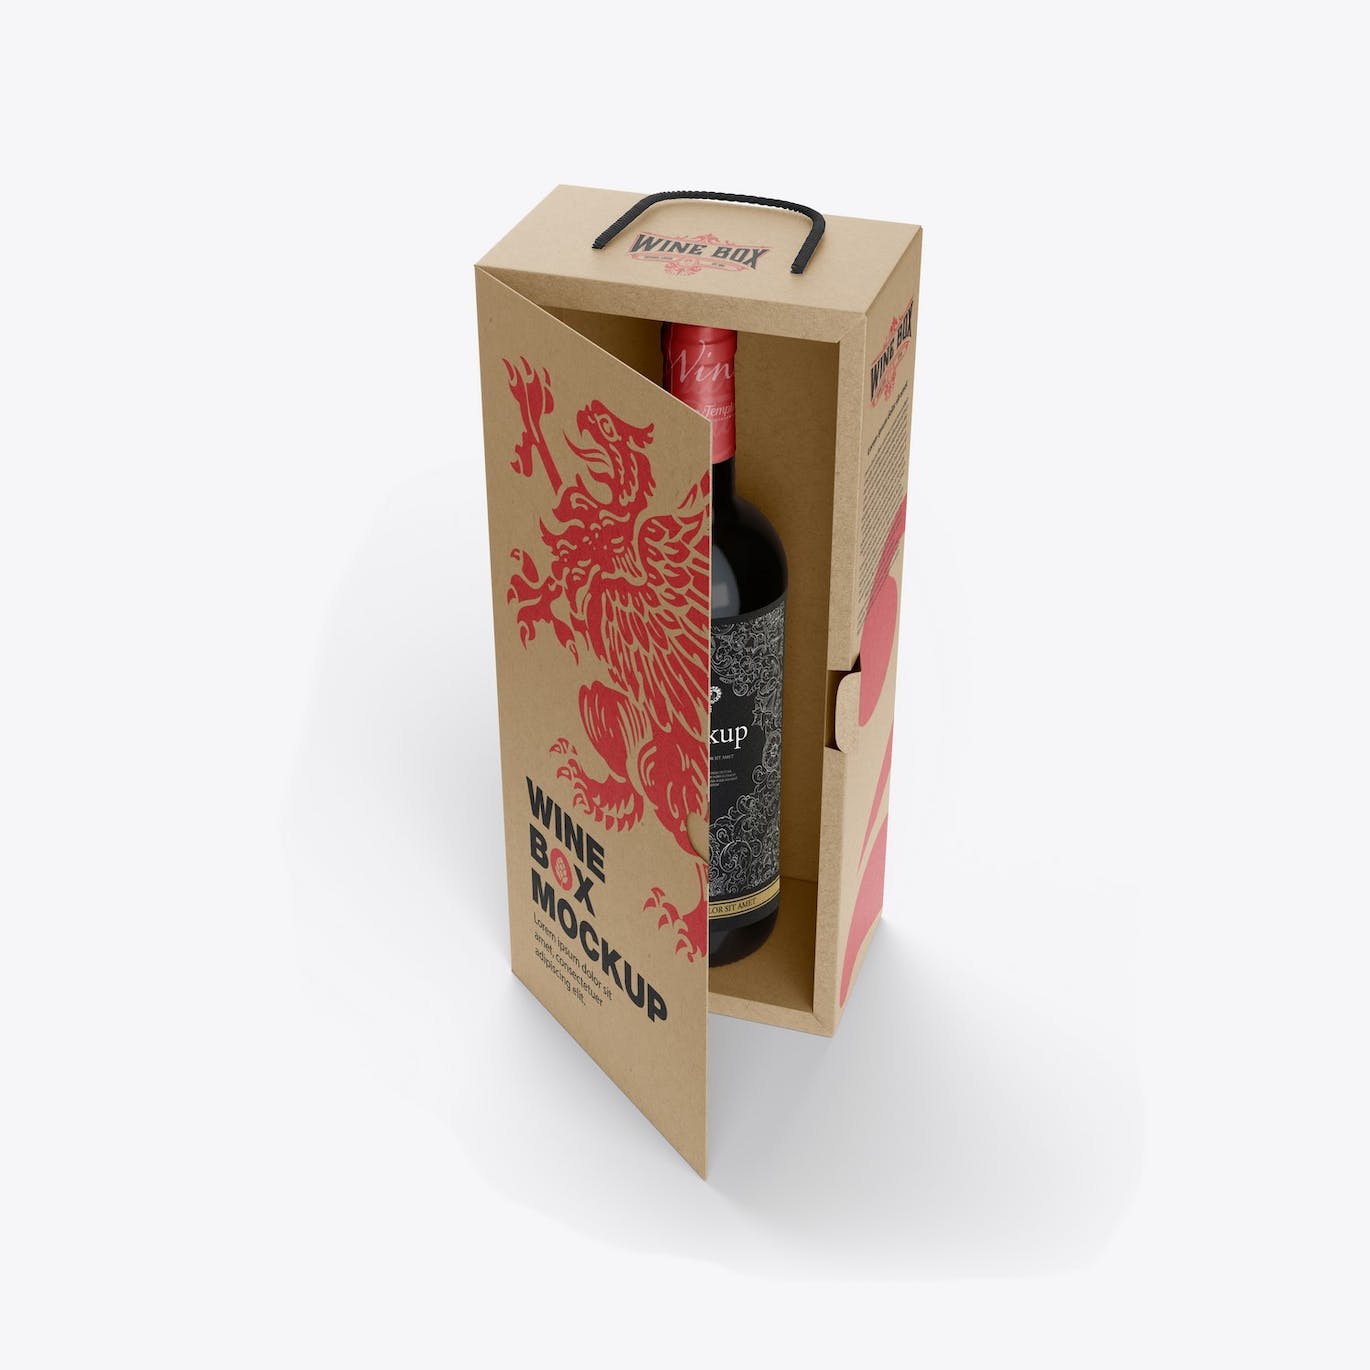 红酒酒瓶纸礼盒品牌包装设计样机 Box with Wine Bottle Mockup 样机素材 第8张